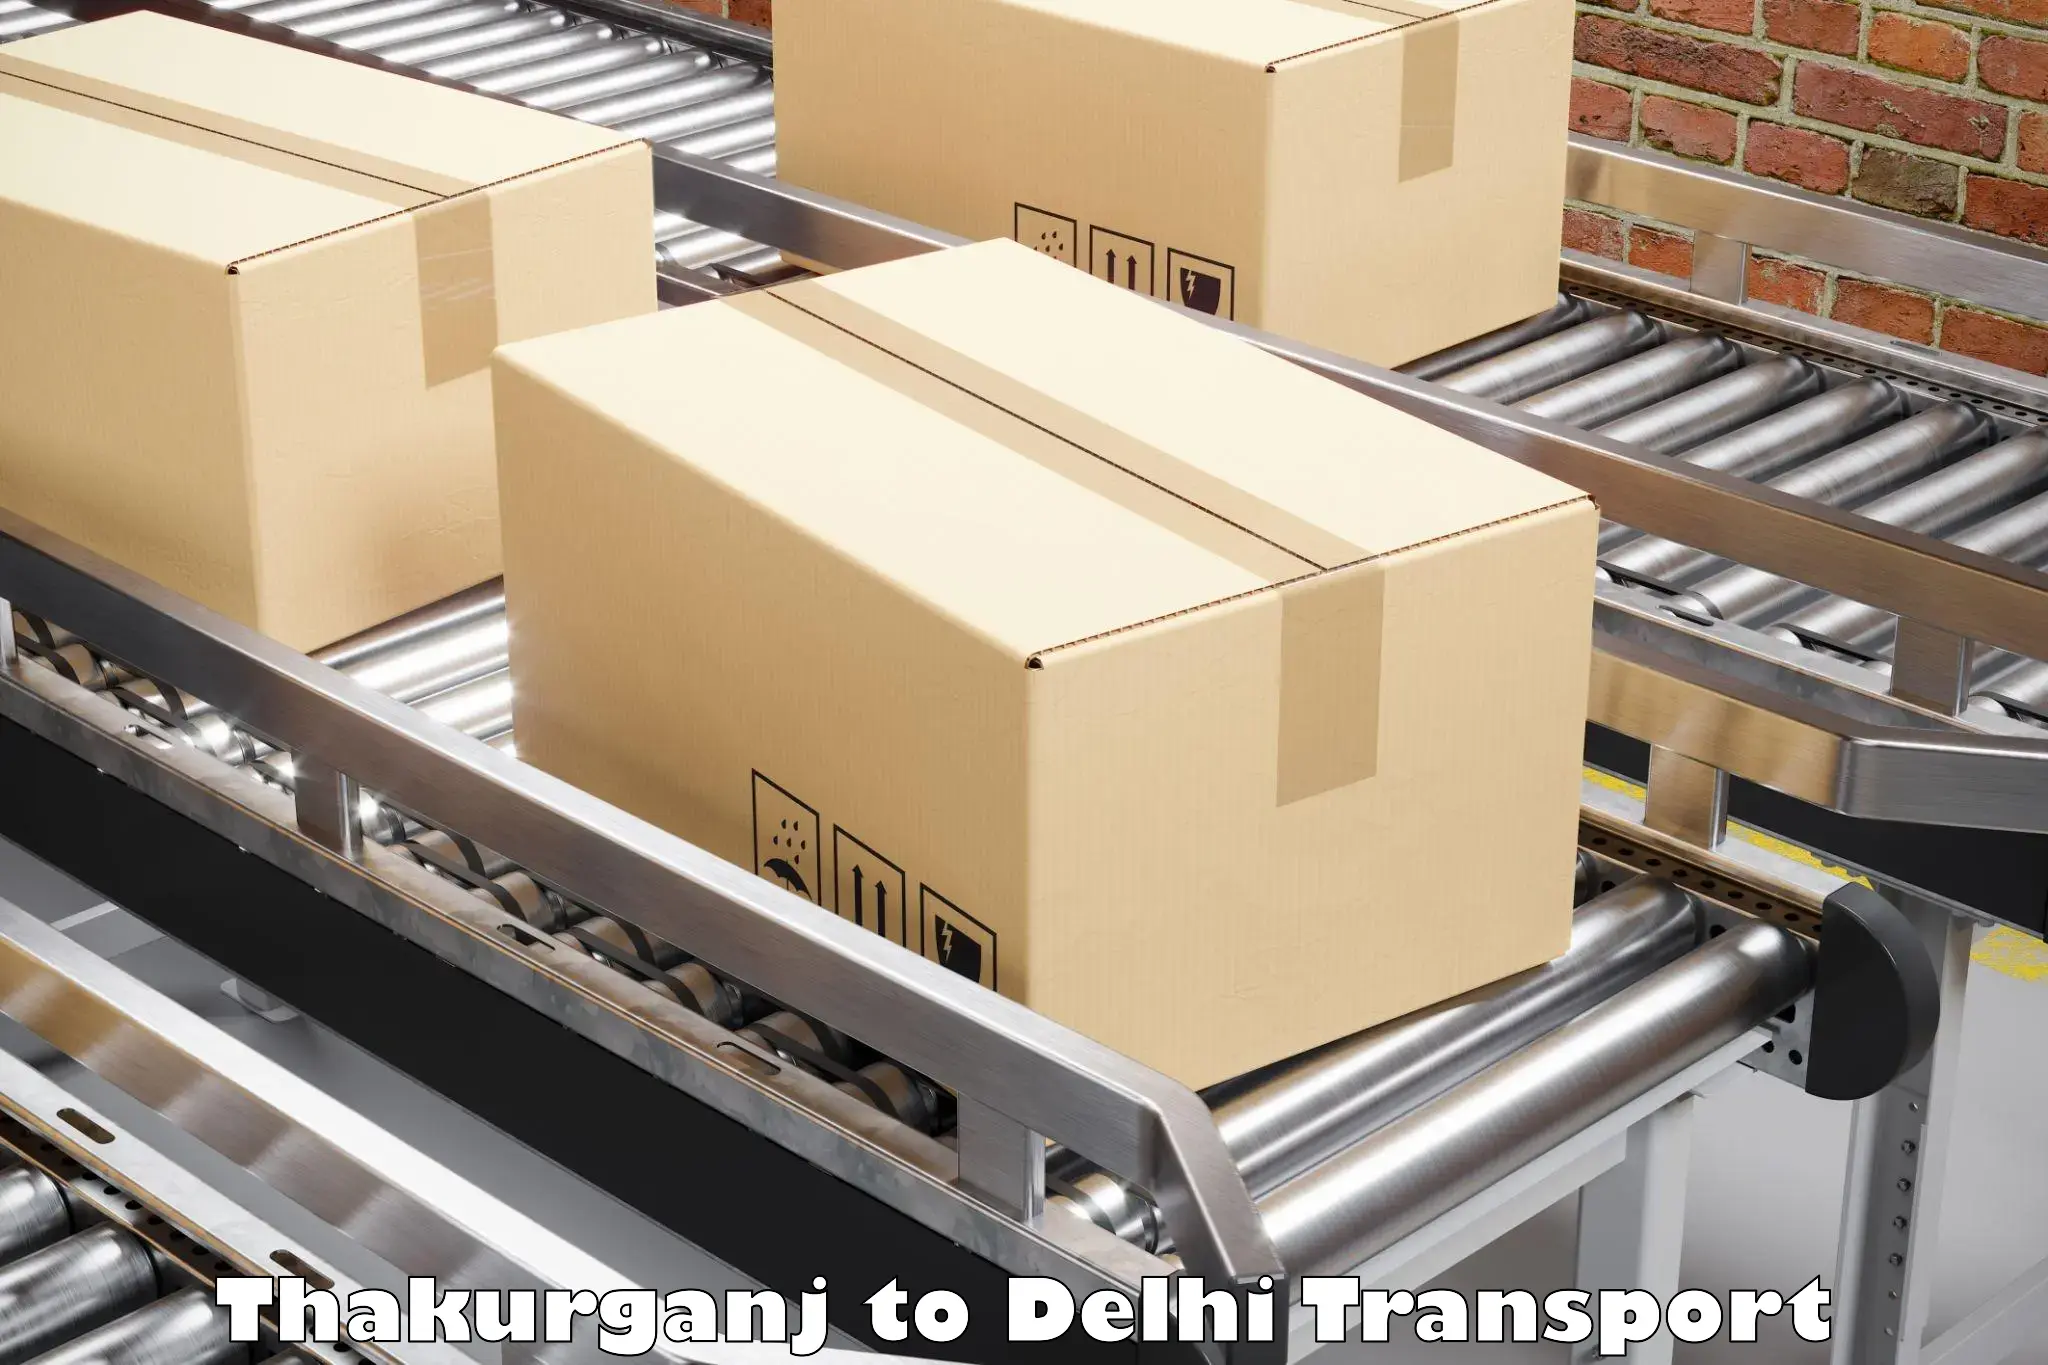 Two wheeler transport services Thakurganj to NIT Delhi